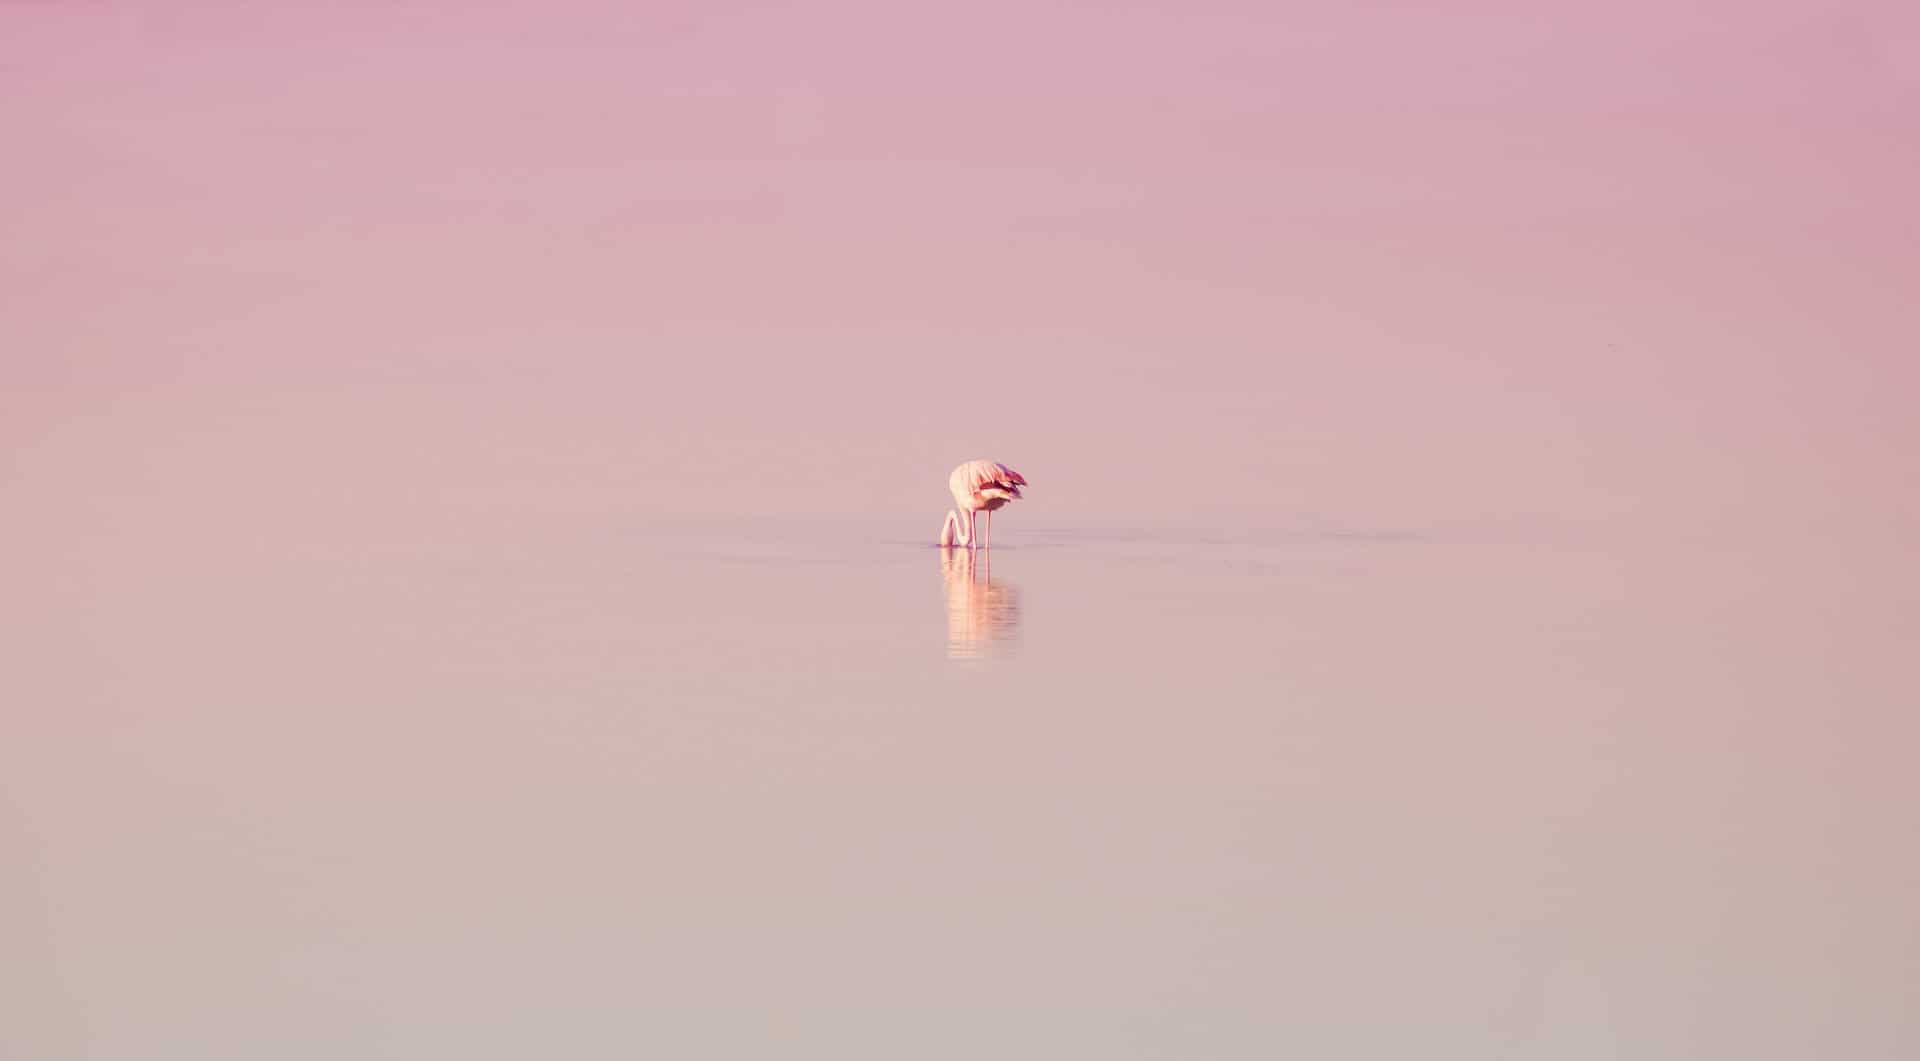 Spain - Andalucia - Lake - Flamingo